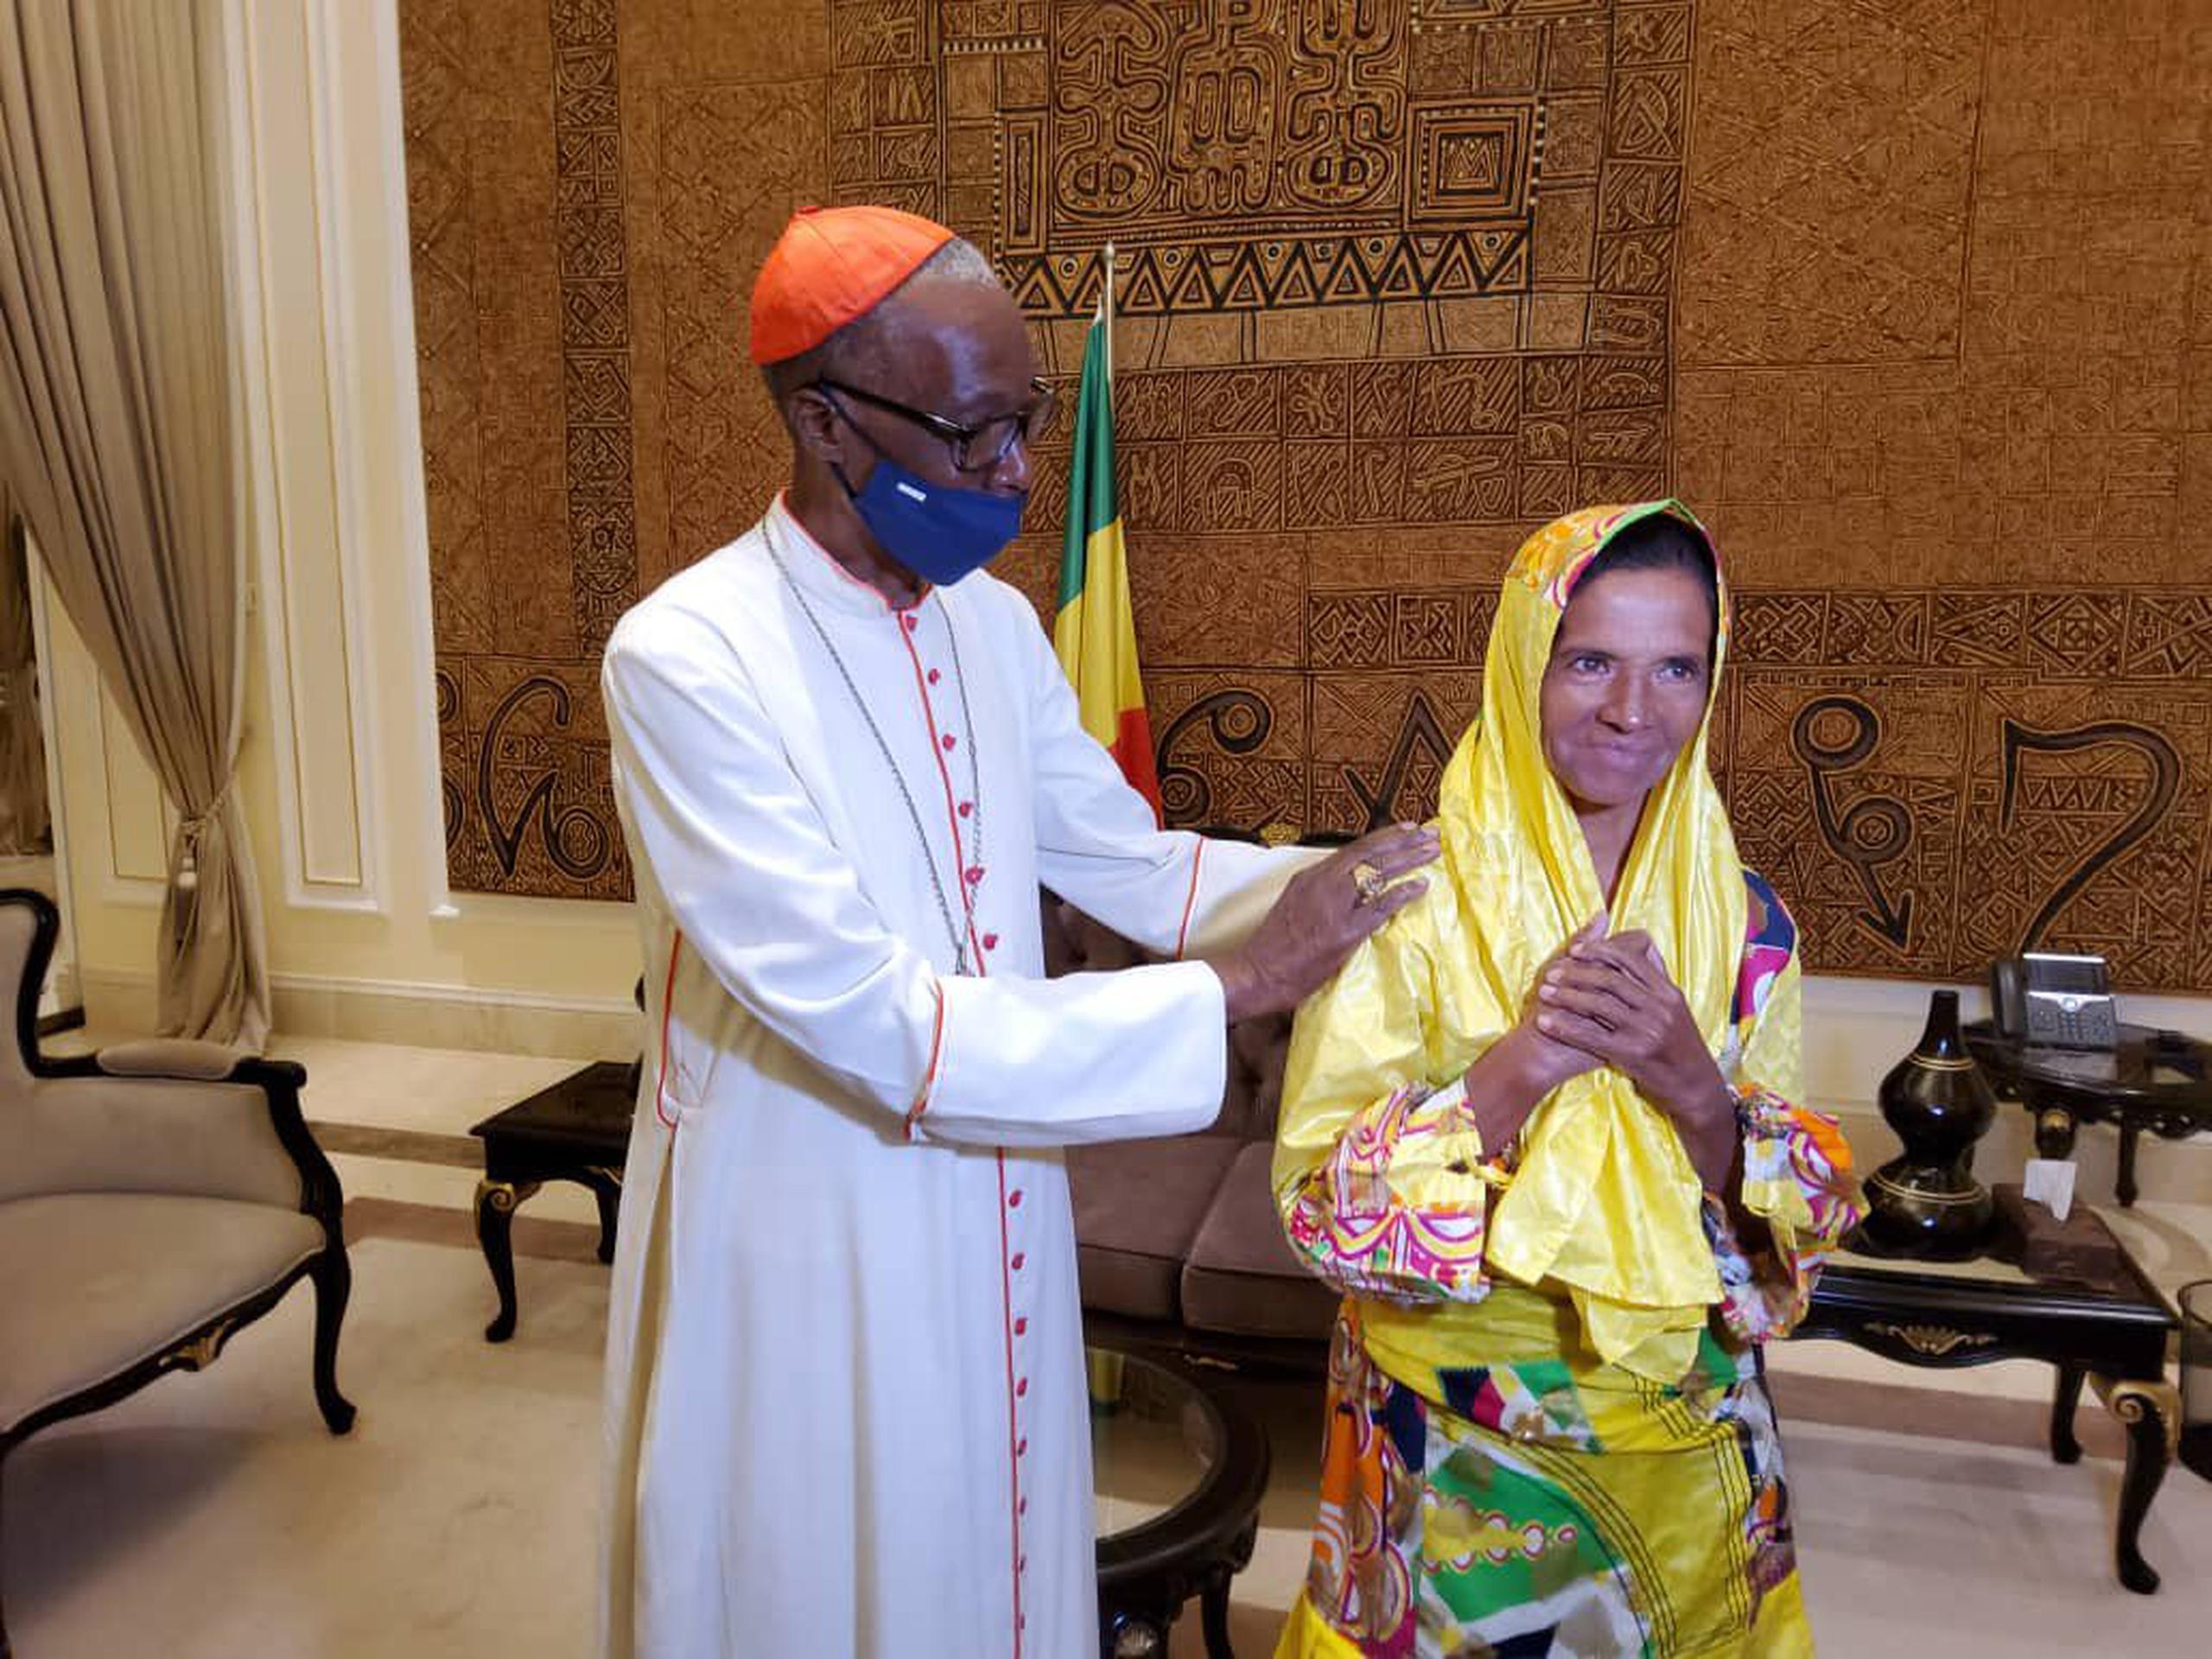 Las fotos publicadas en el perfil de Twitter de la presidencia de Mali muestran a Gloria Narváez en un vestido y pañuelo amarillos, uniendo sus manos y sonriendo junto al presidente interino maliense Assimi Goita.